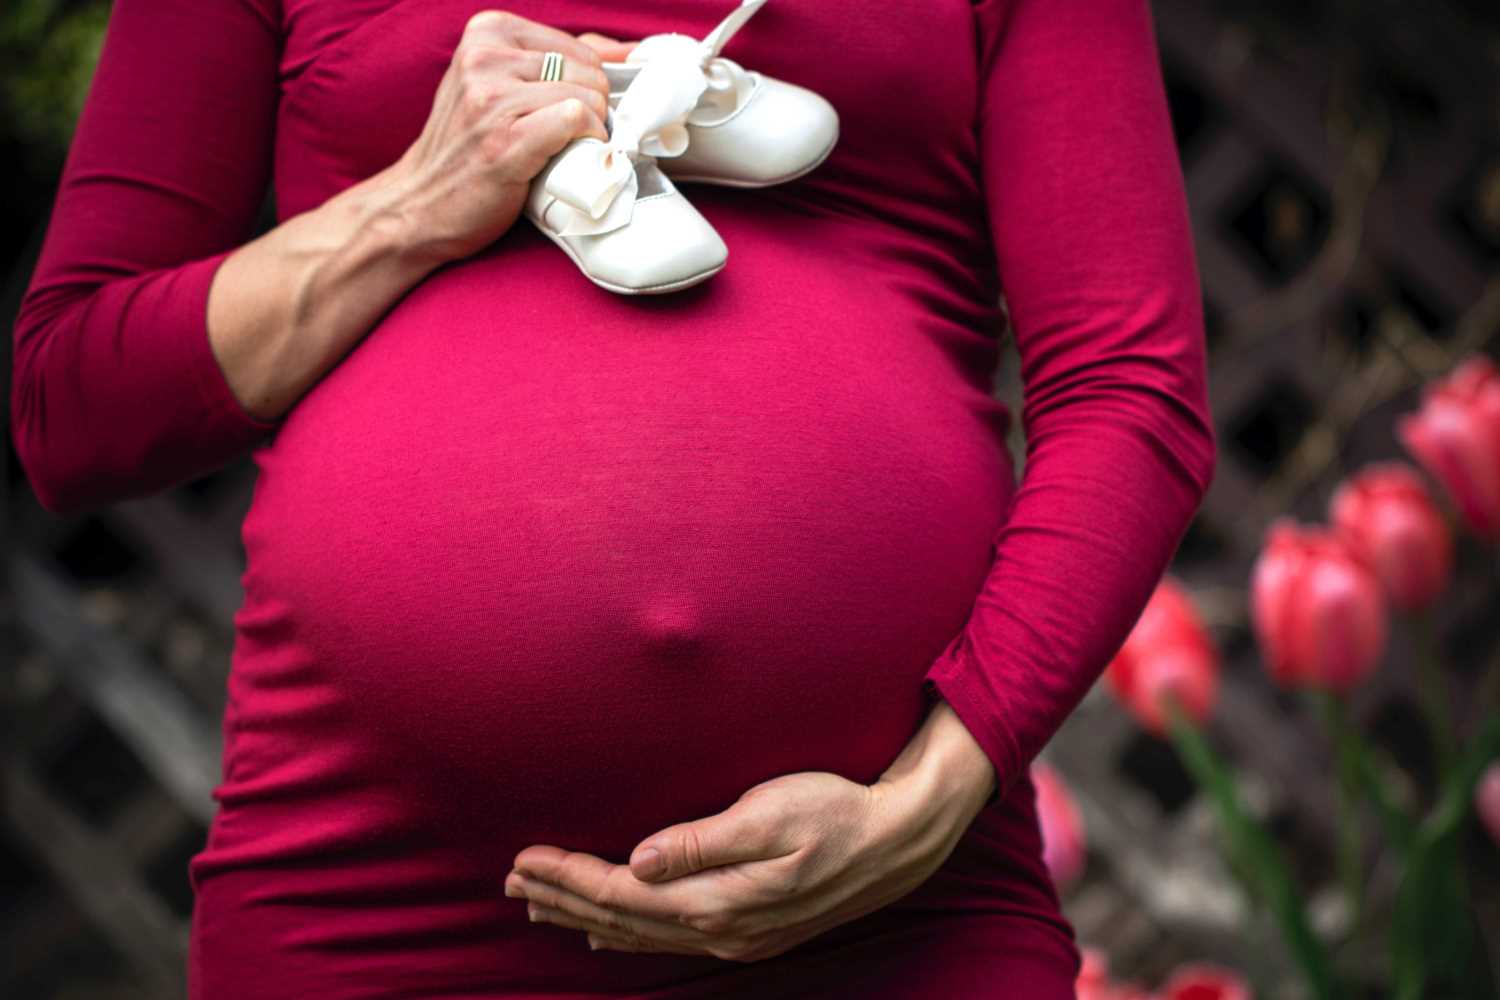 SEMPRE MENO ABORTI IN ITALIA: AI MINIMI DA 40 ANNI